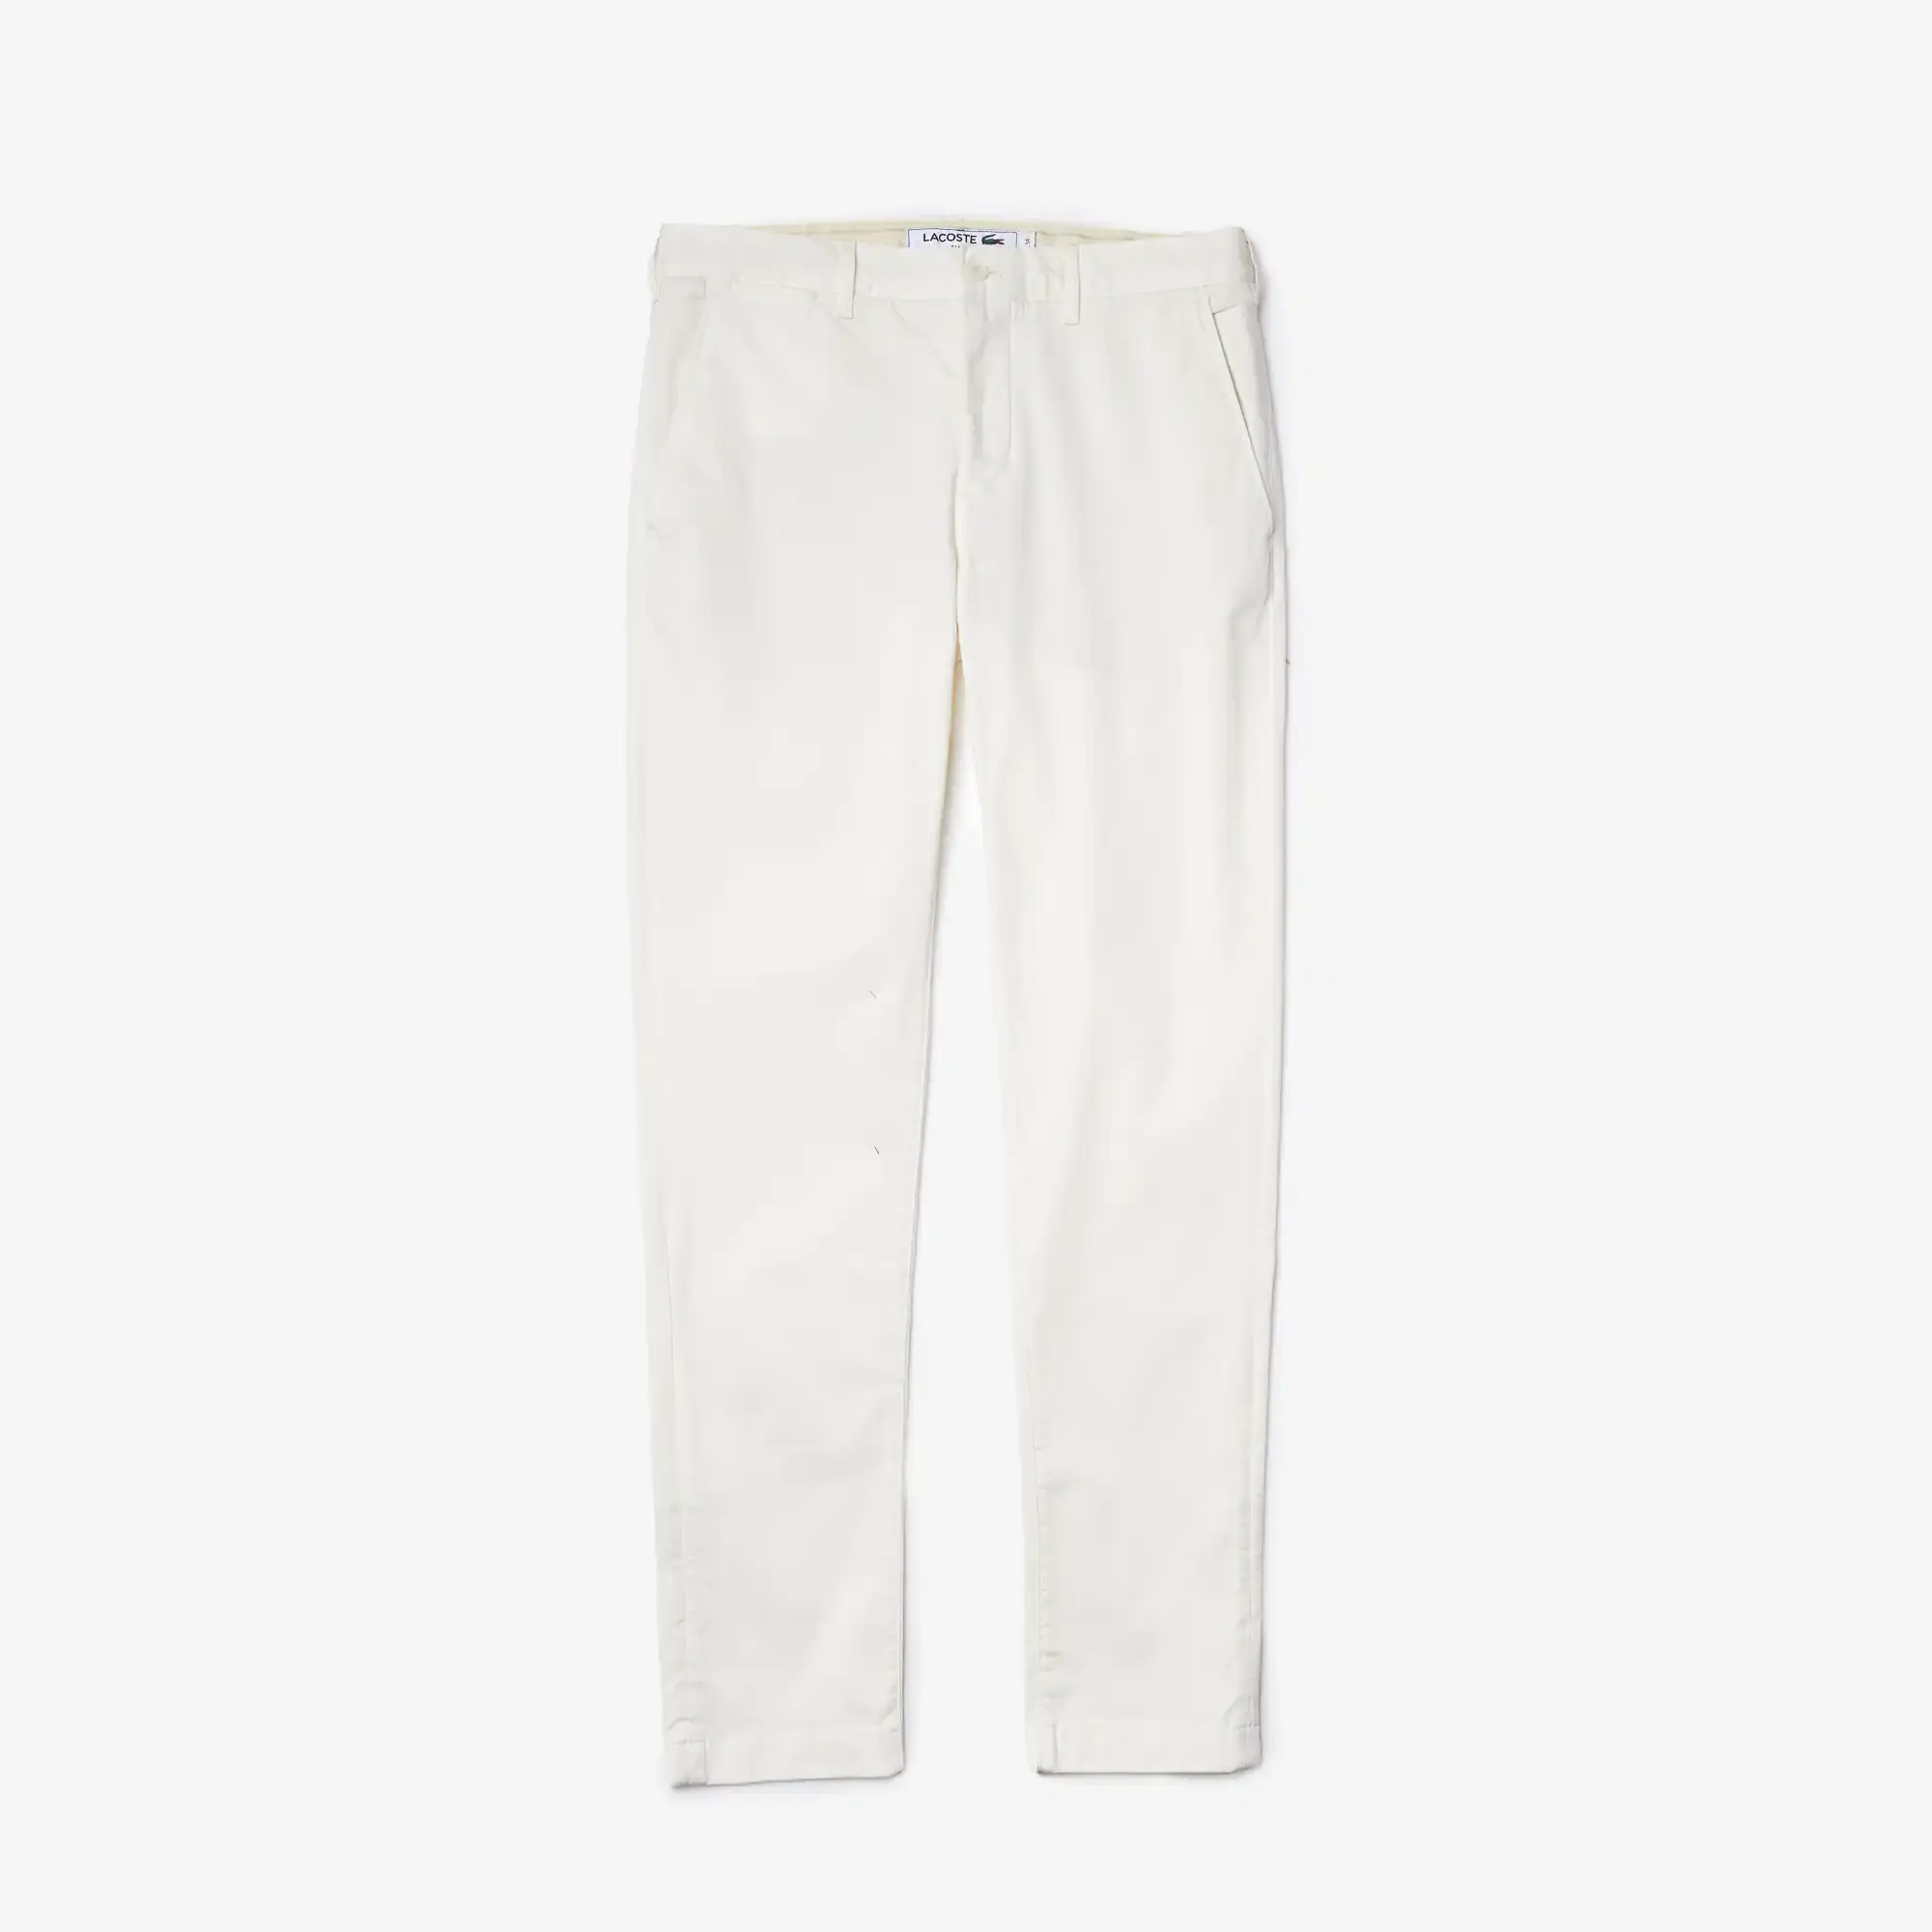 Lacoste Men's Slim Fit Stretch Cotton Trousers. 2